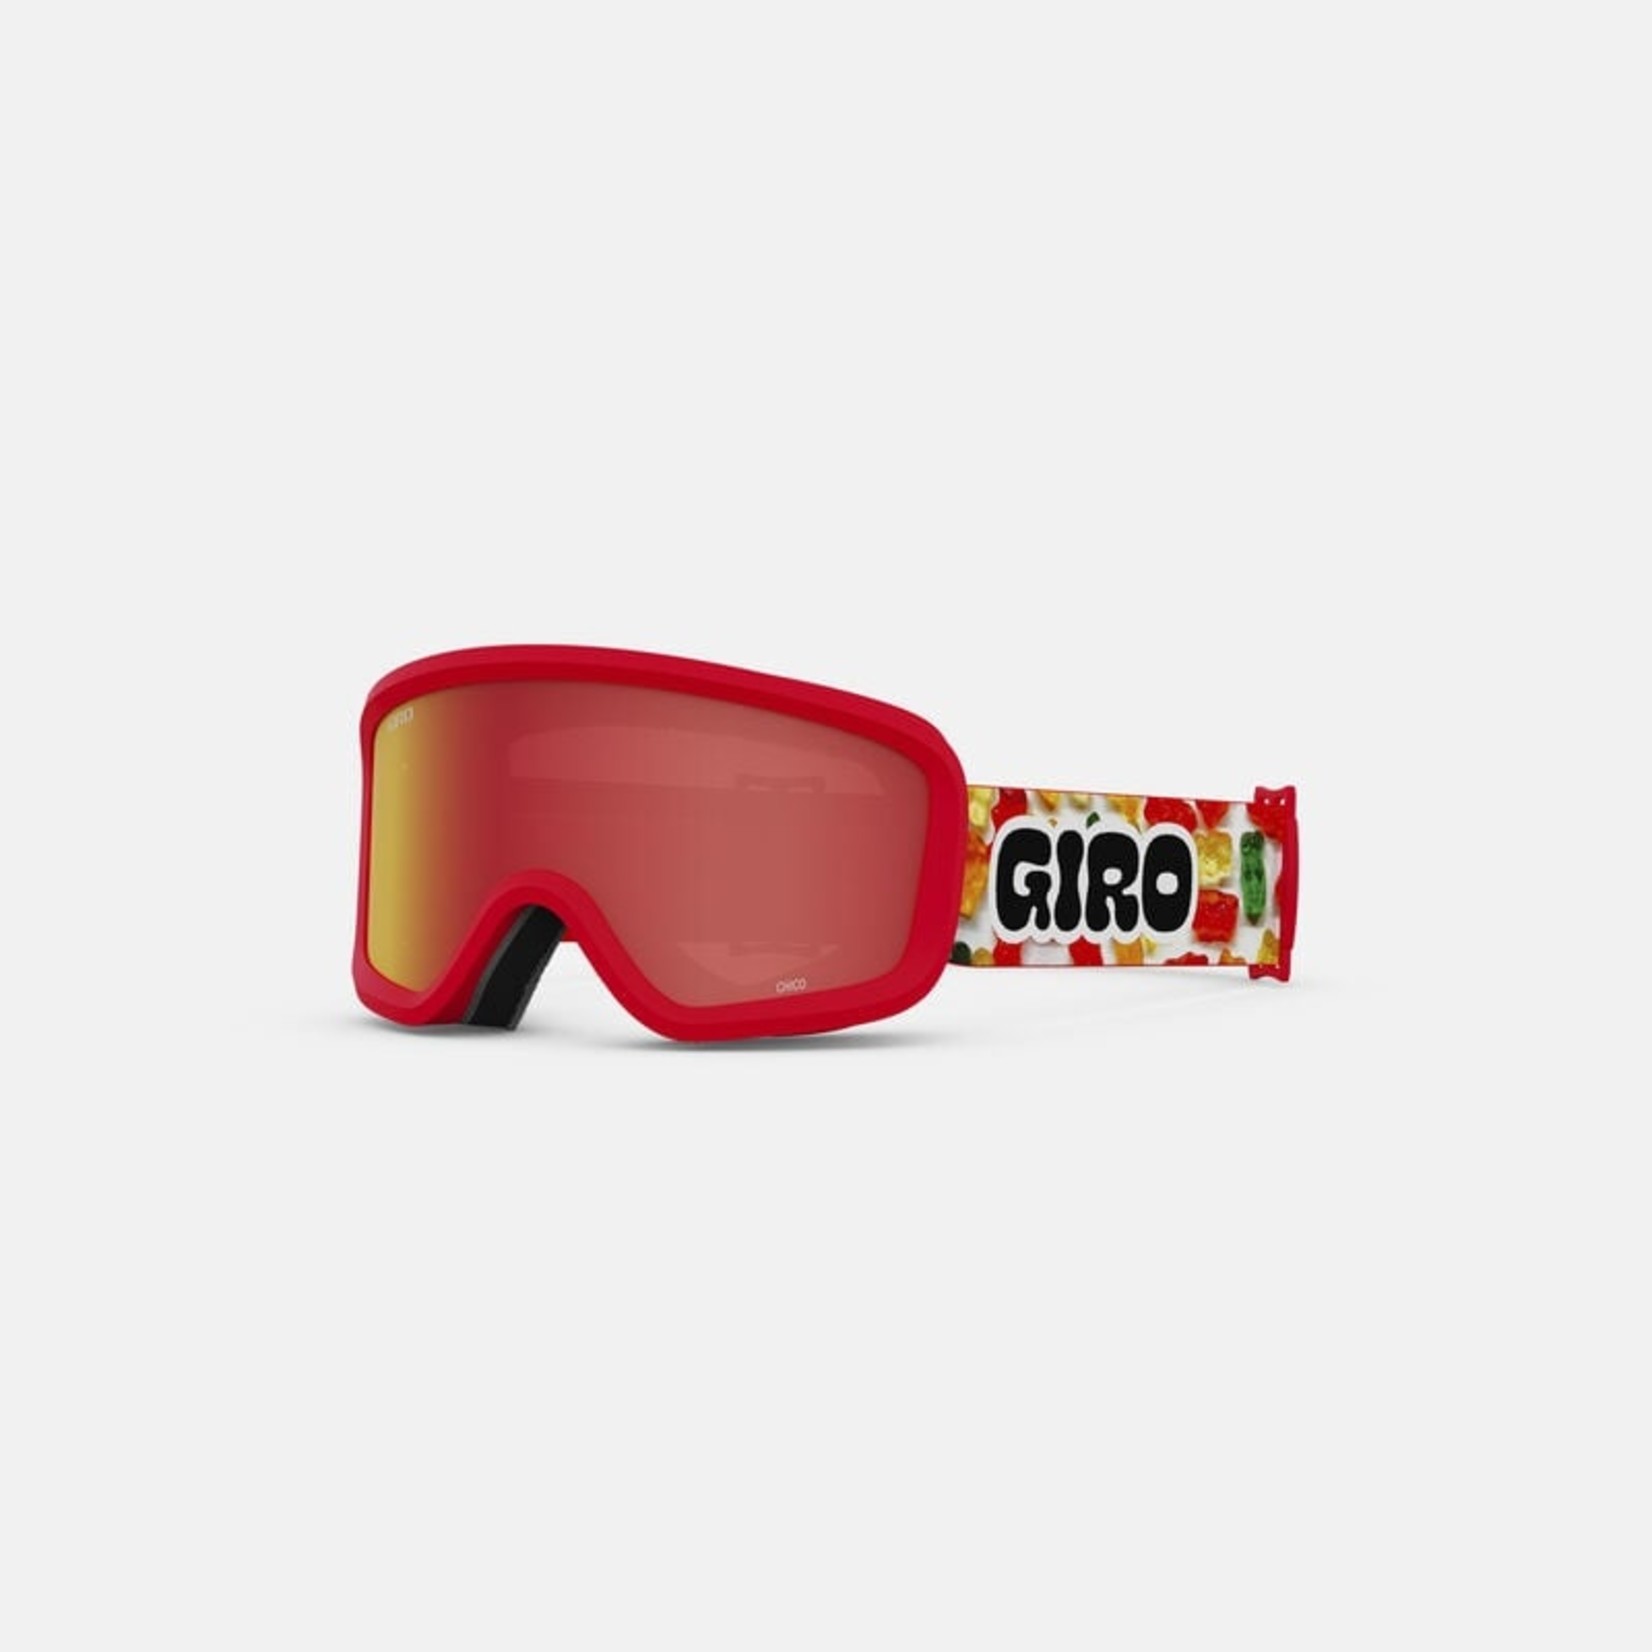 Giro NEW Giro Chico Kids Snowboard Goggles Small